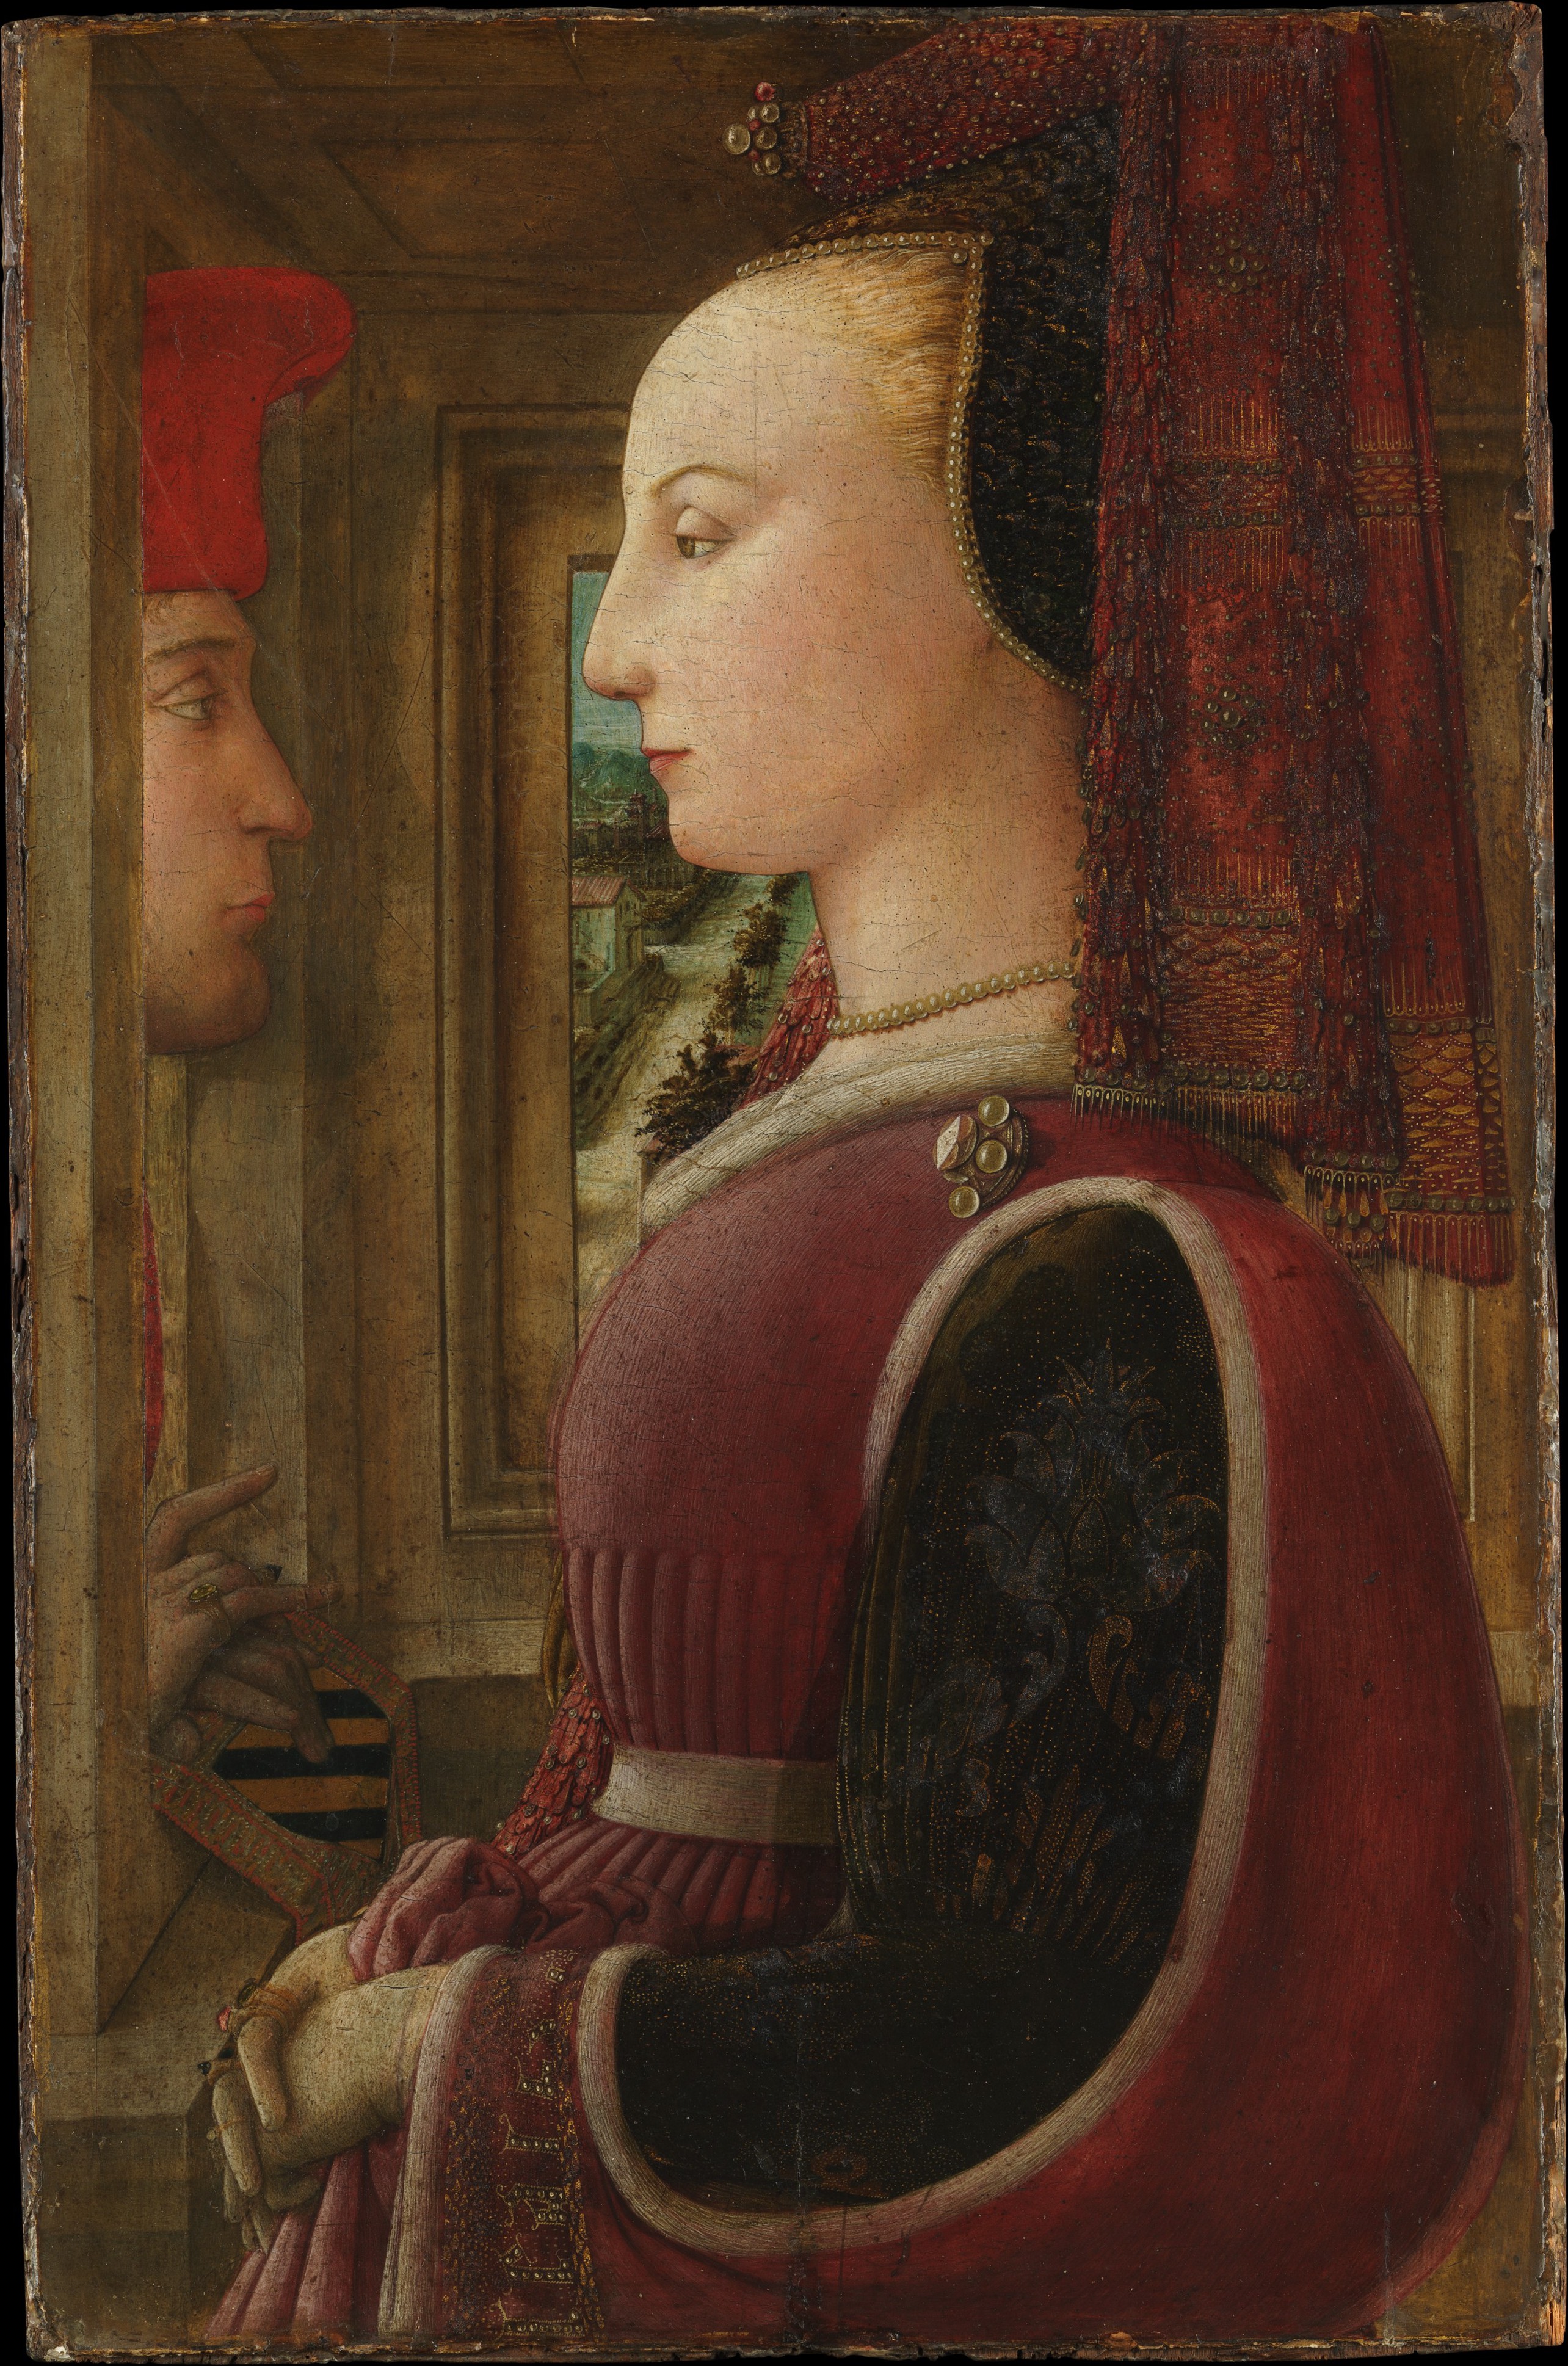 Retrato de una mujer con un hombre en un marco by Fra Filippo Lippi - c. 1440 - 64,1 x 41,9 cm Museo Metropolitano de Arte